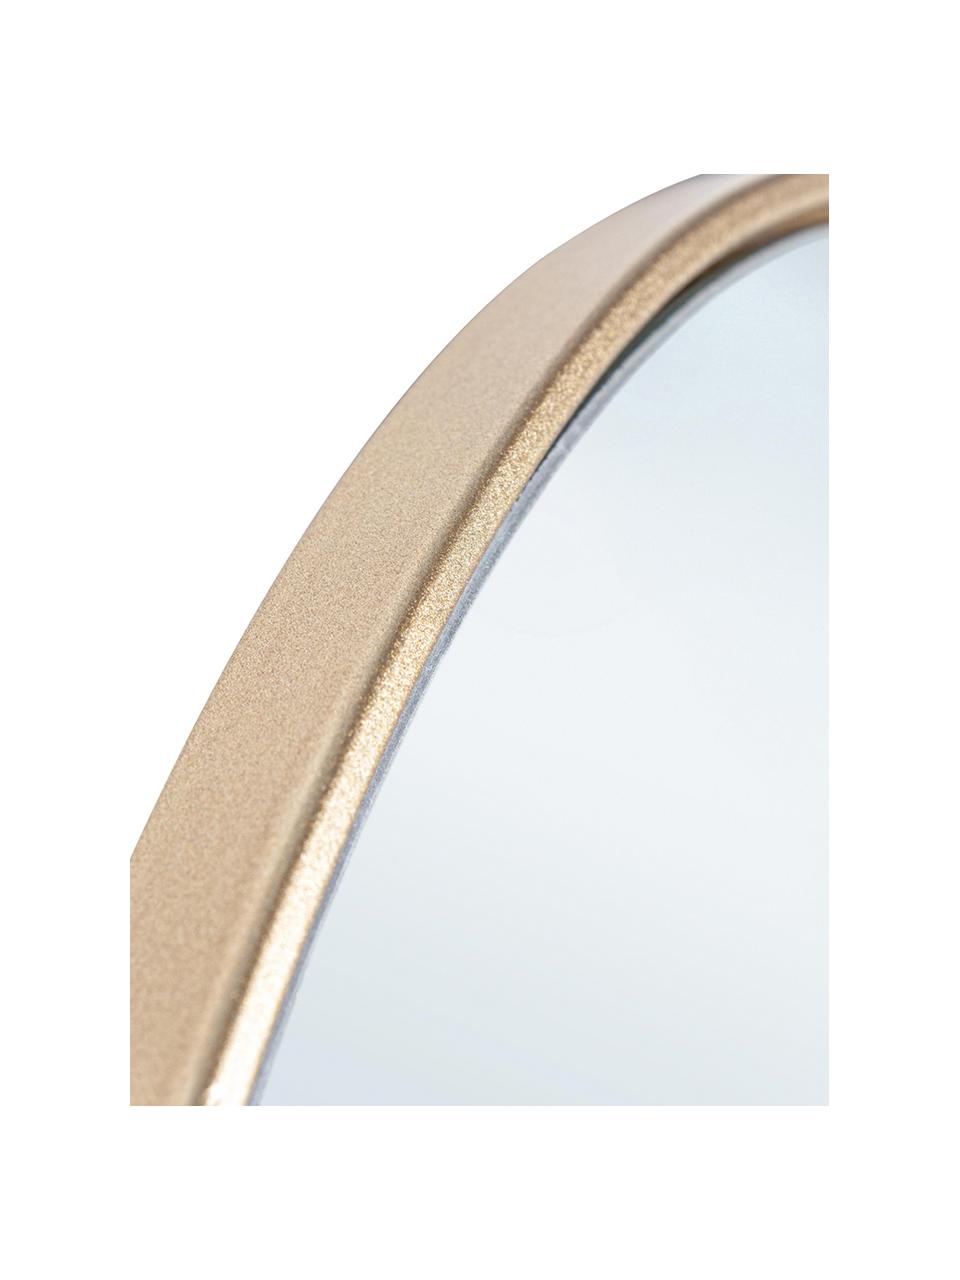 Specchio rotondo da parete con cornice dorata Nucleos, Cornice: metallo rivestito, Superficie dello specchio: lastra di vetro, Ottonato, Ø 40 cm